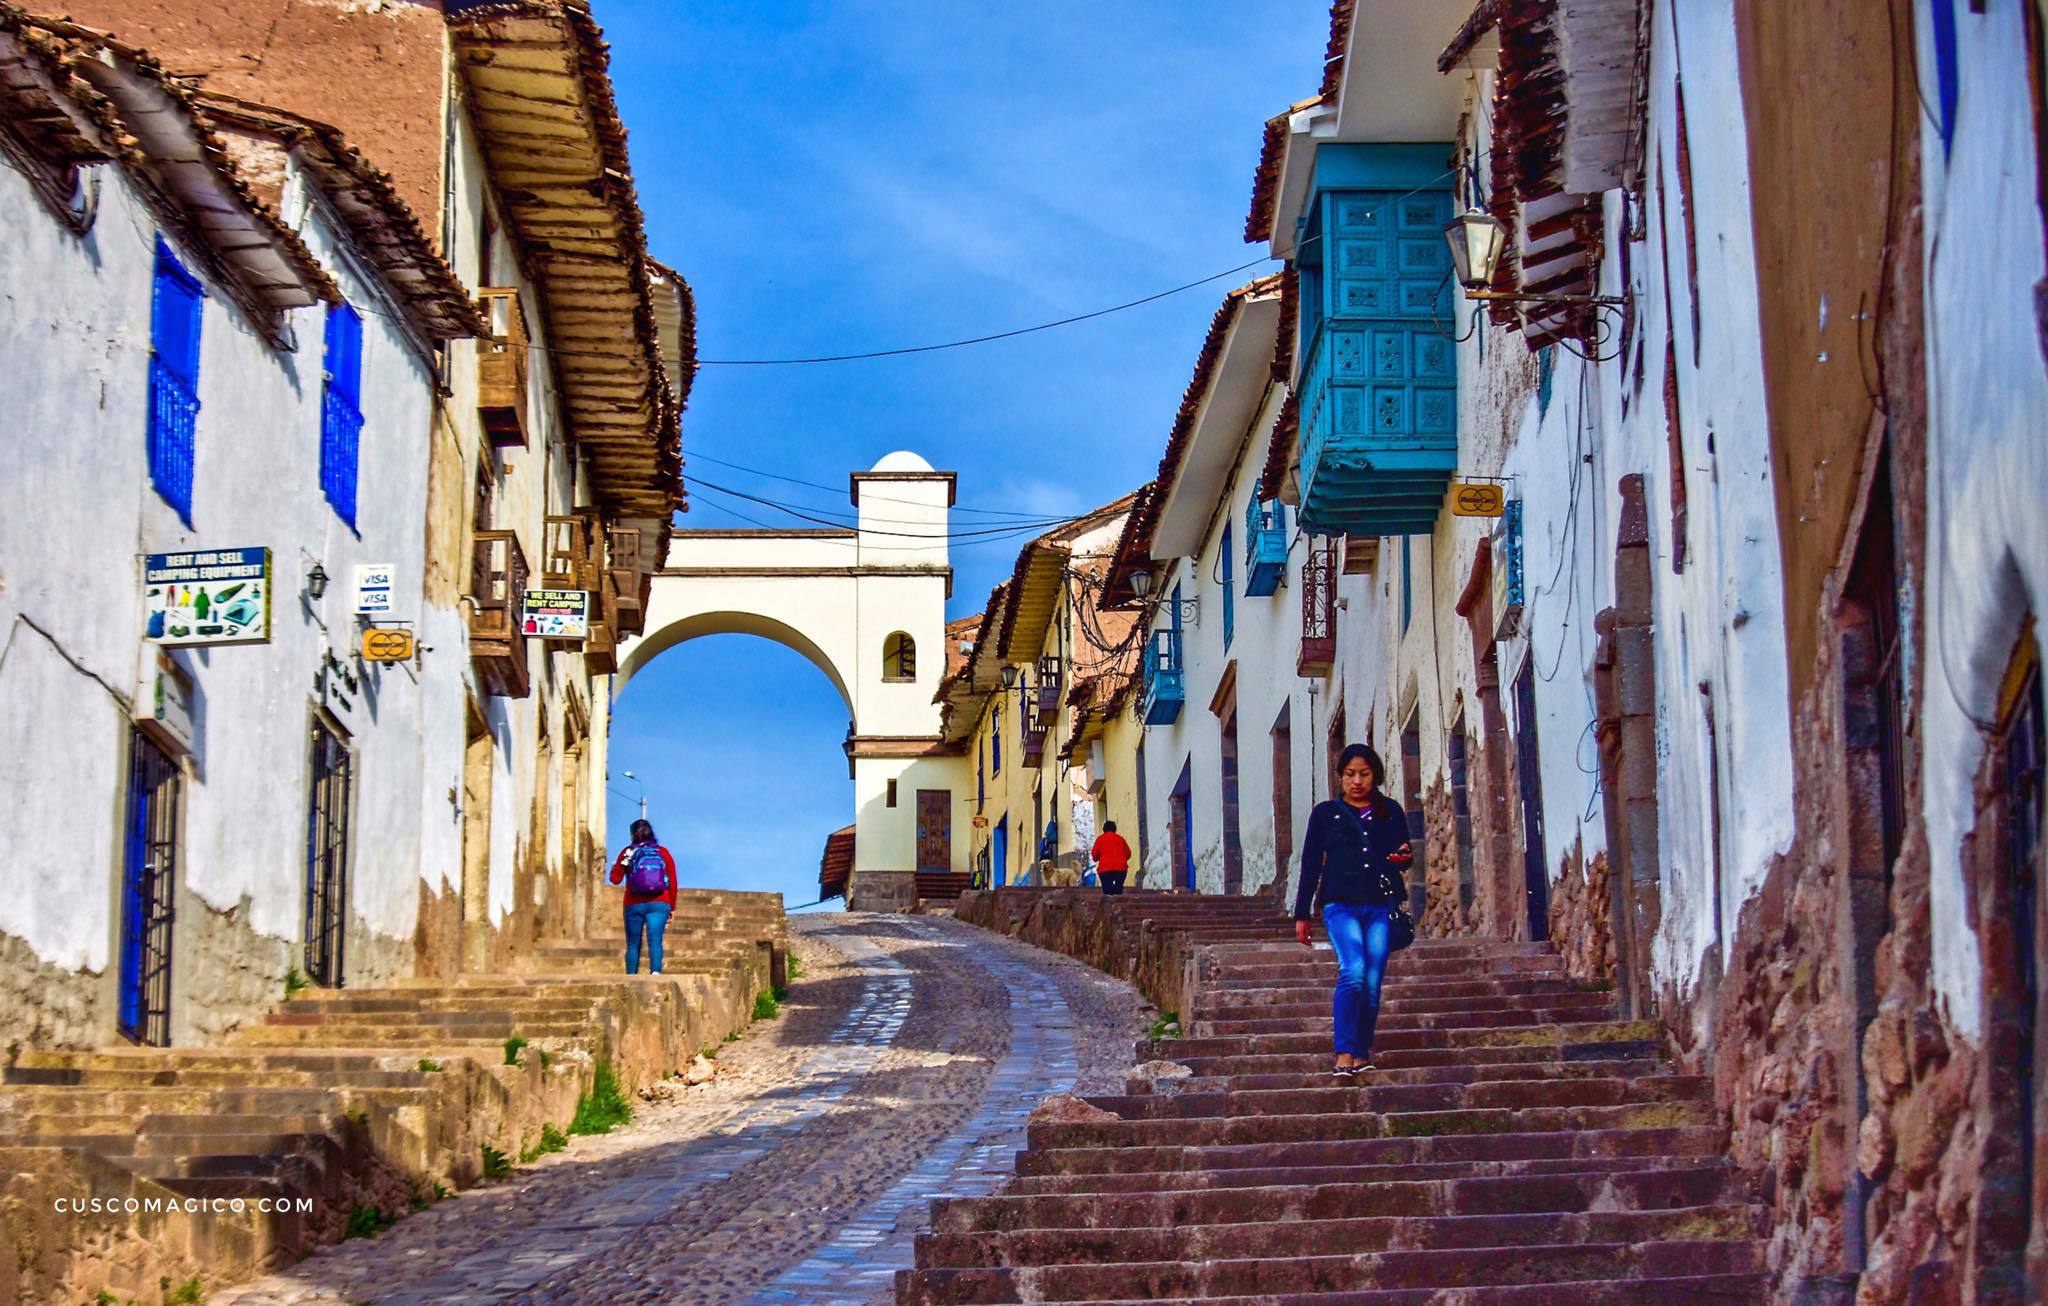 La ciudad peruana ha destacado por su arquitectura, gastronomía y la variedad de experiencias que ofrece.